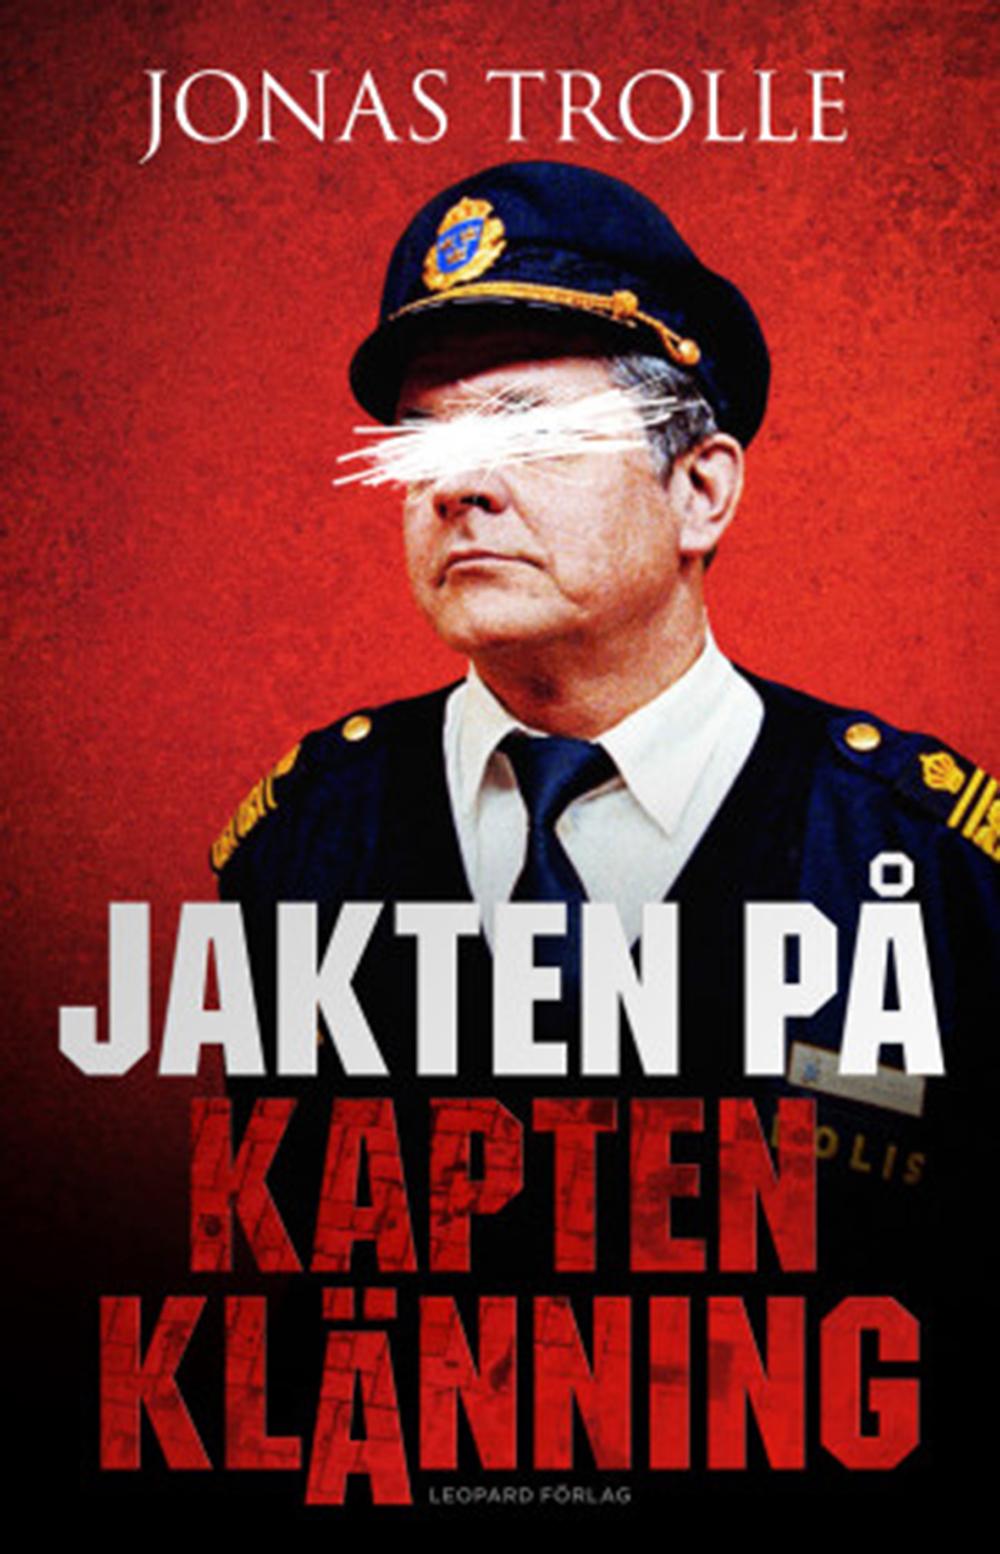 ”Jakten på kapten Klänning” (Leopard förlag).